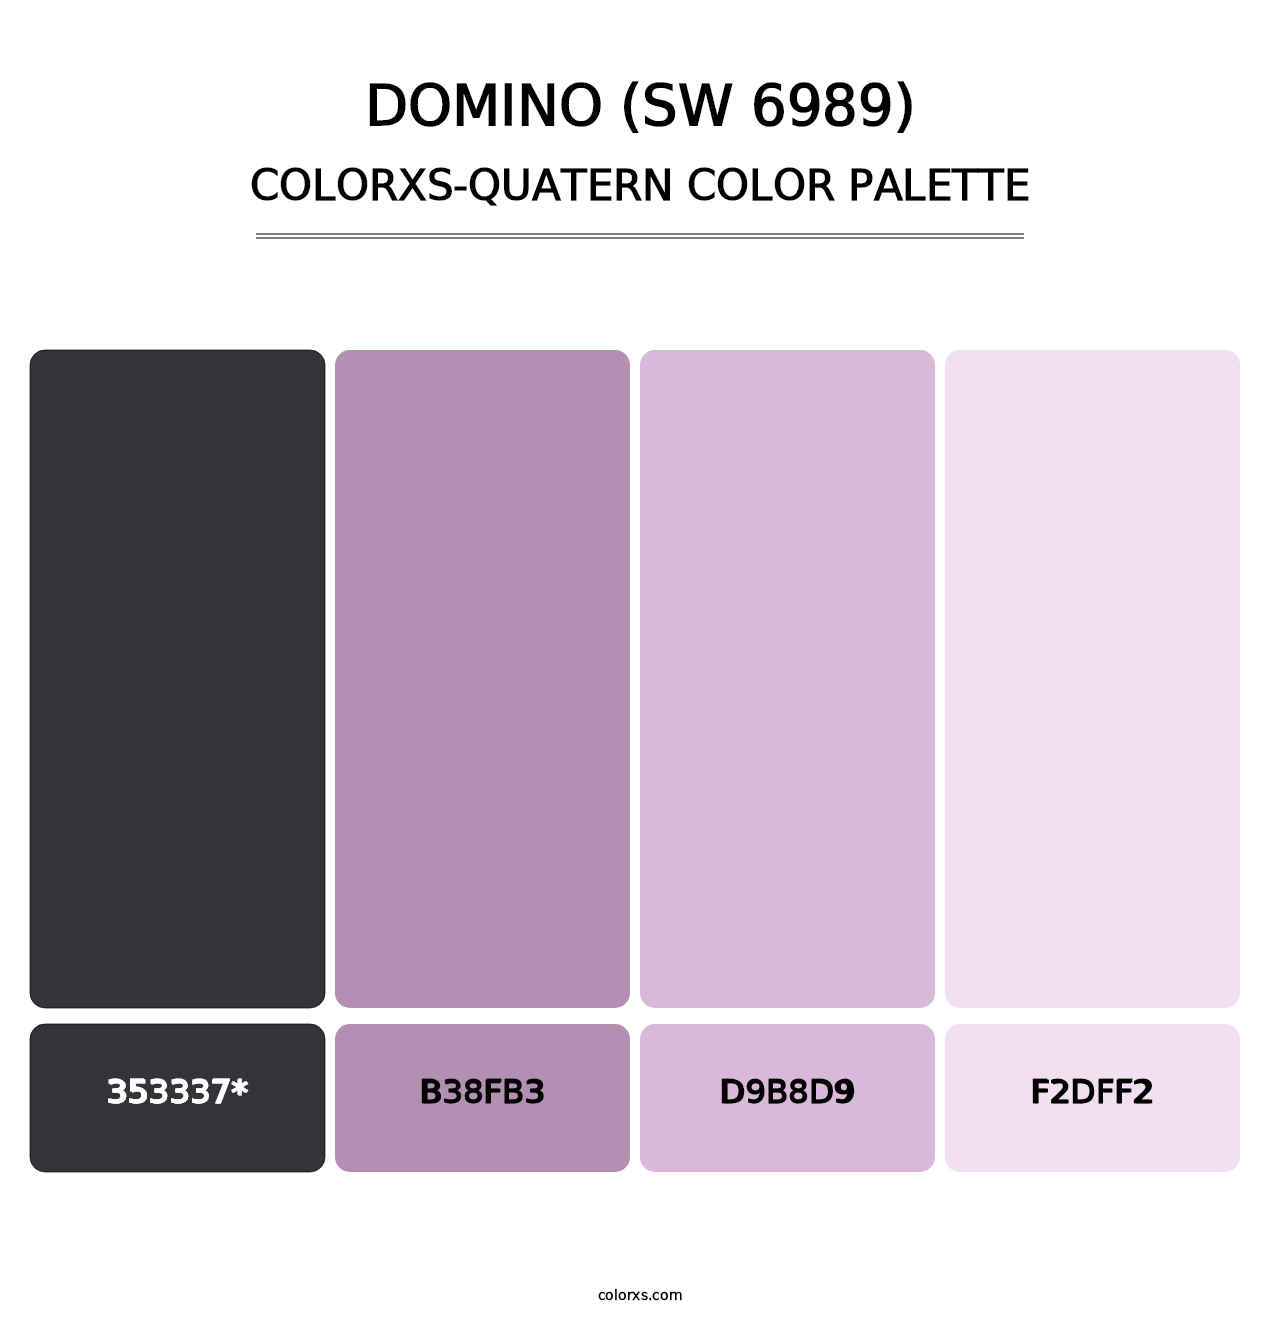 Domino (SW 6989) - Colorxs Quatern Palette